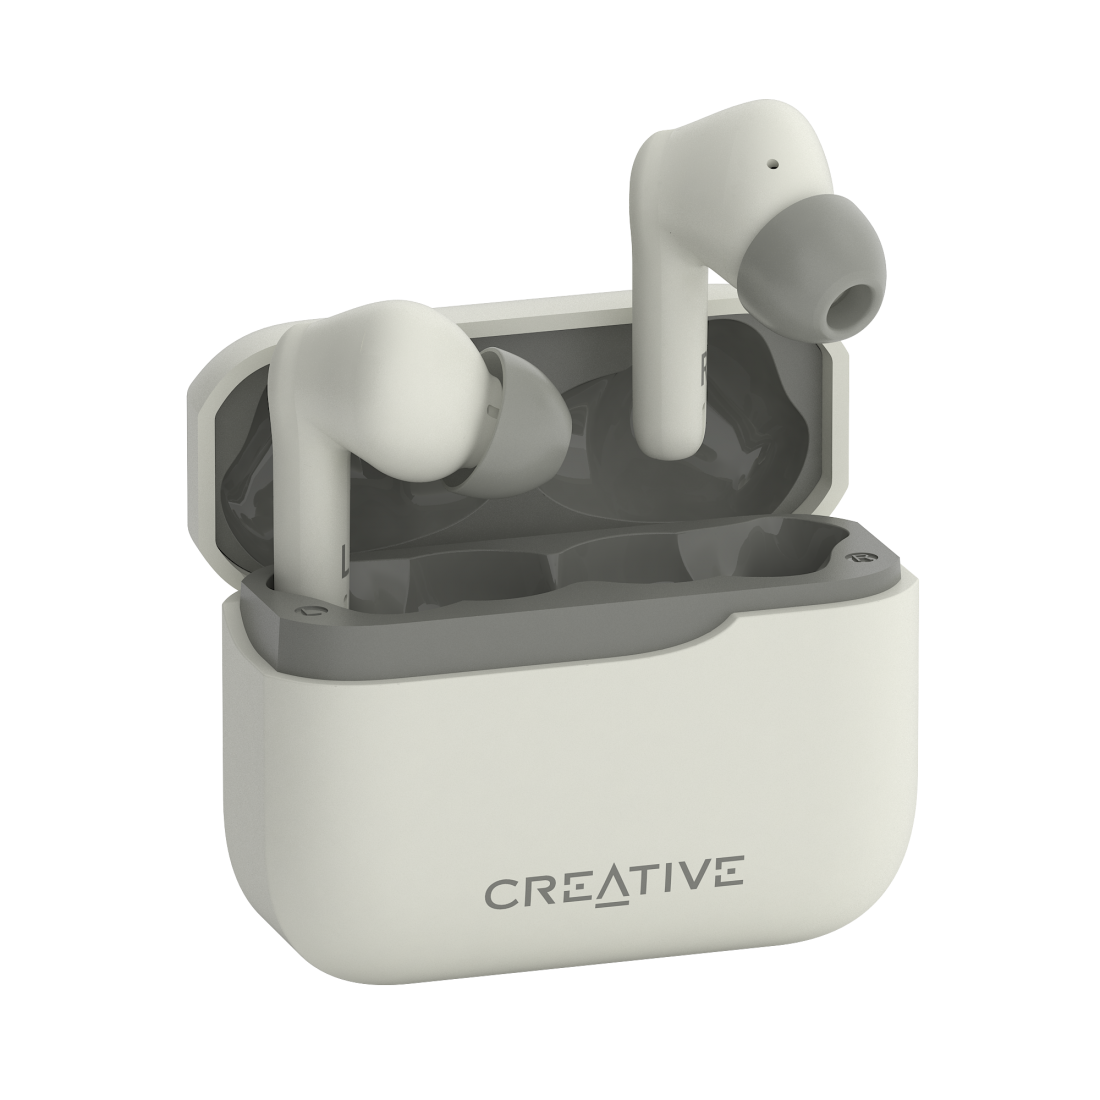 Creative выпустила две новые TWS гарнитуры с LE Audio: характеристики и цены.